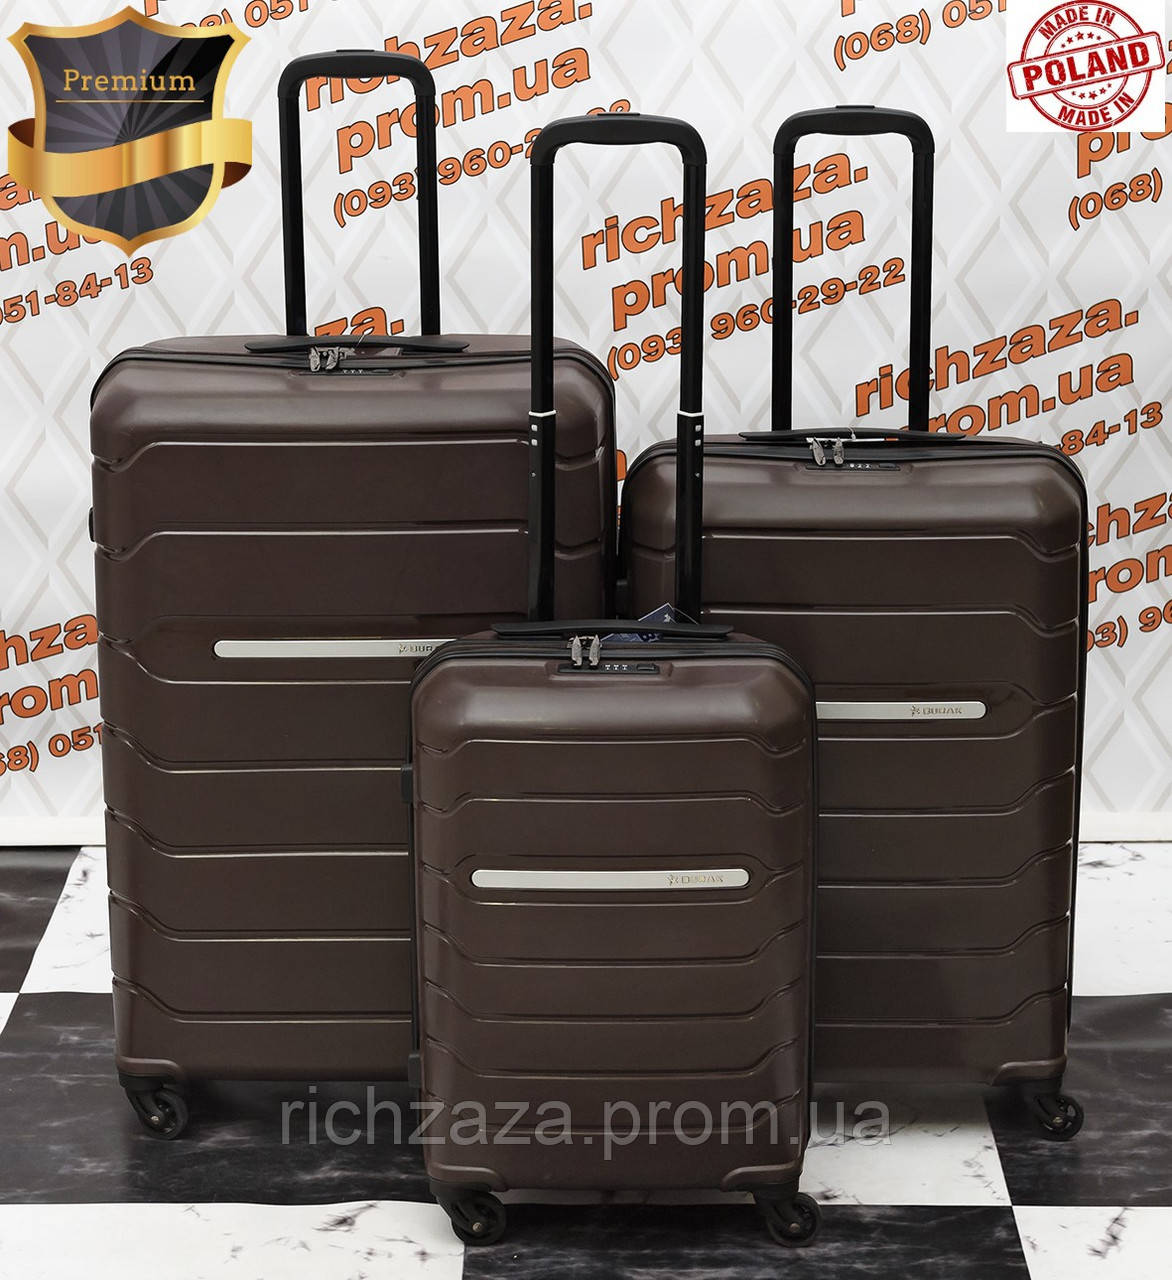 

Комплект ударостойких чемоданов из полипропилена на 4 колесах Burak шоколад